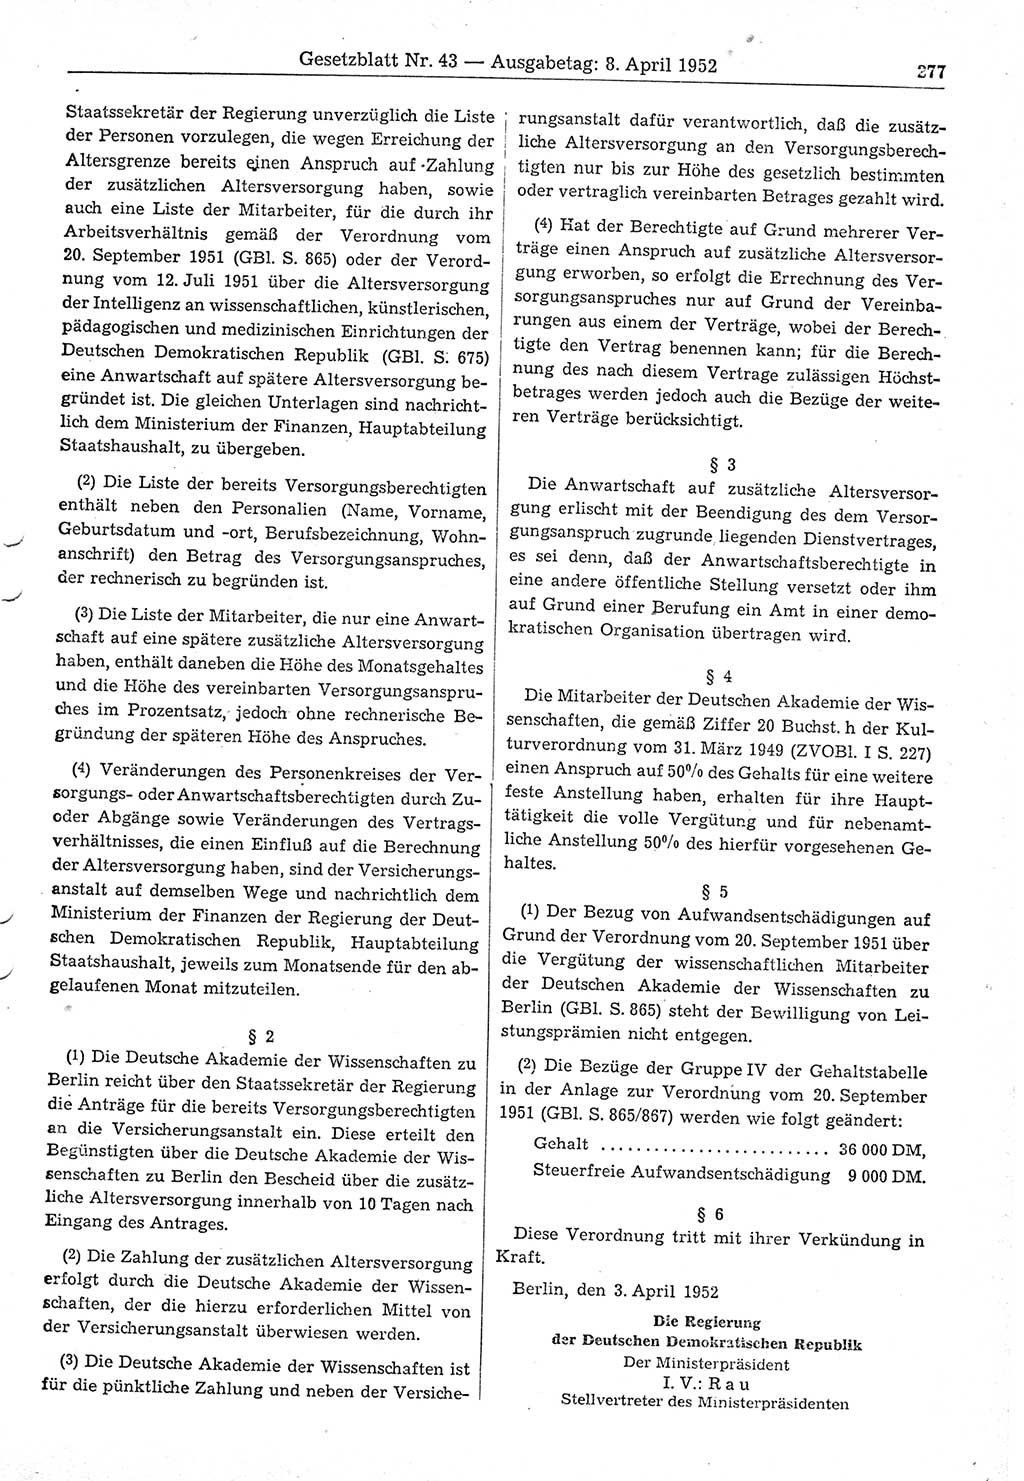 Gesetzblatt (GBl.) der Deutschen Demokratischen Republik (DDR) 1952, Seite 277 (GBl. DDR 1952, S. 277)